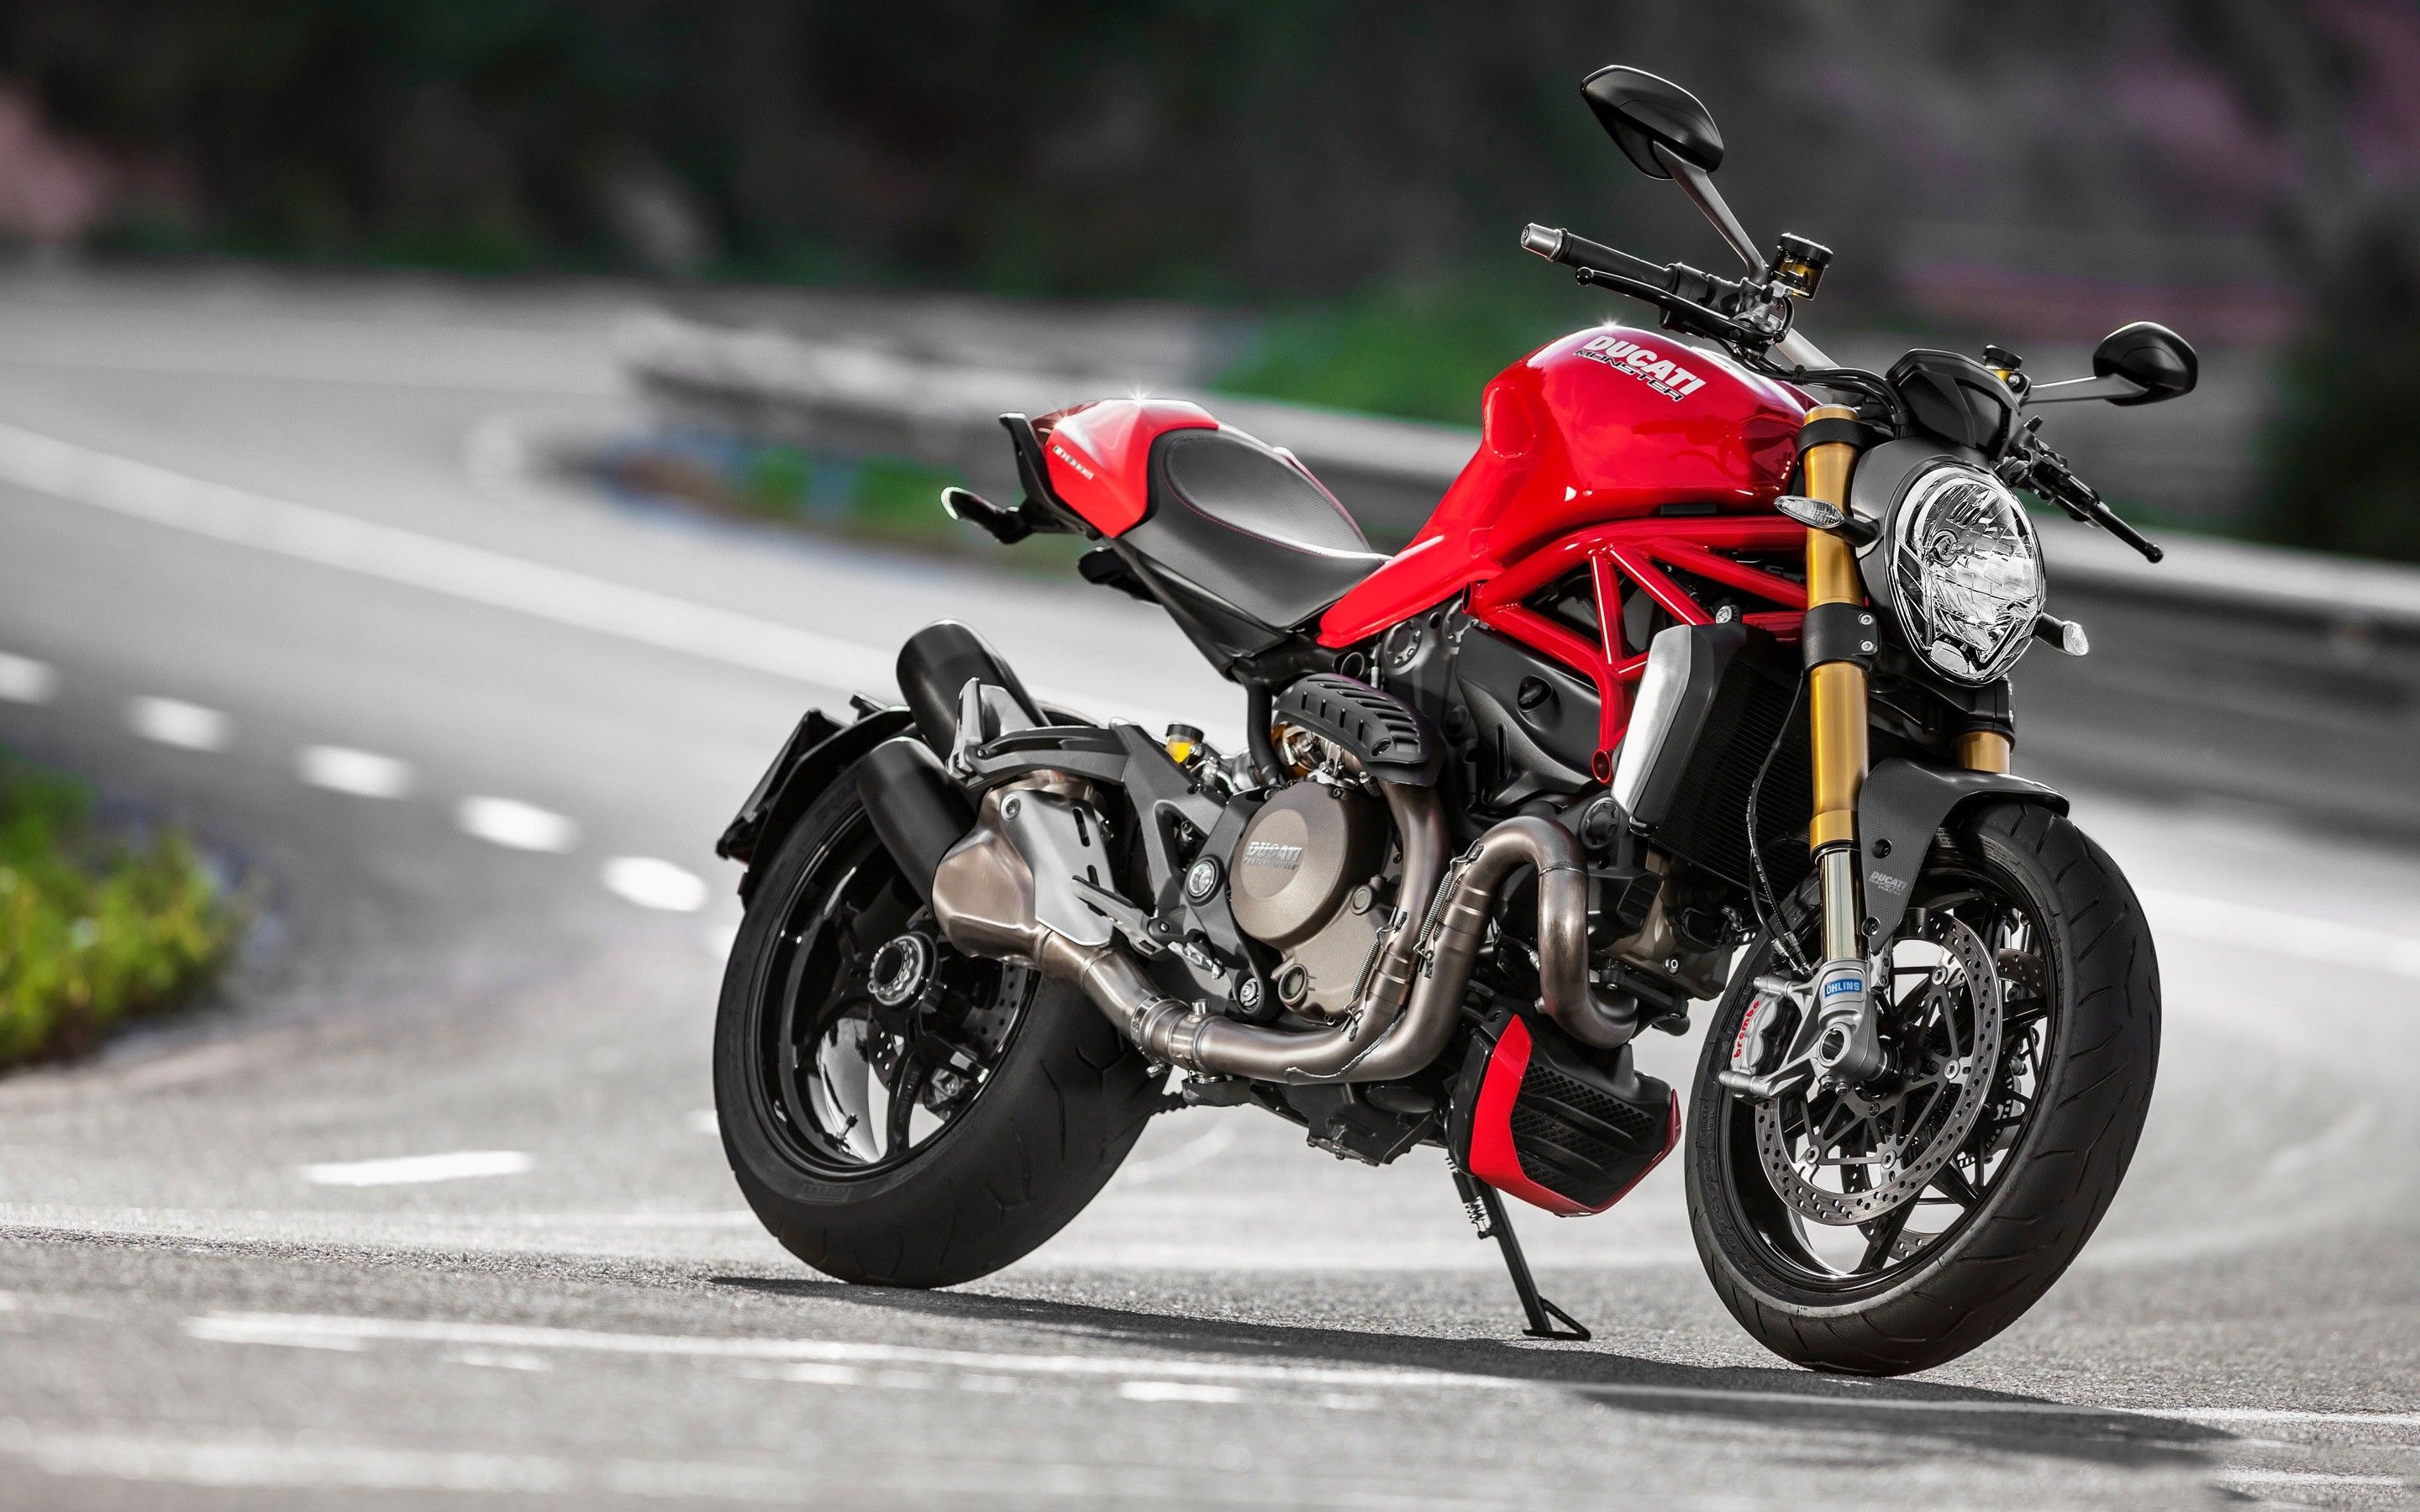 Ducati Monster, Bike background, 1200 model, 821 model, 2880x1800 HD Desktop